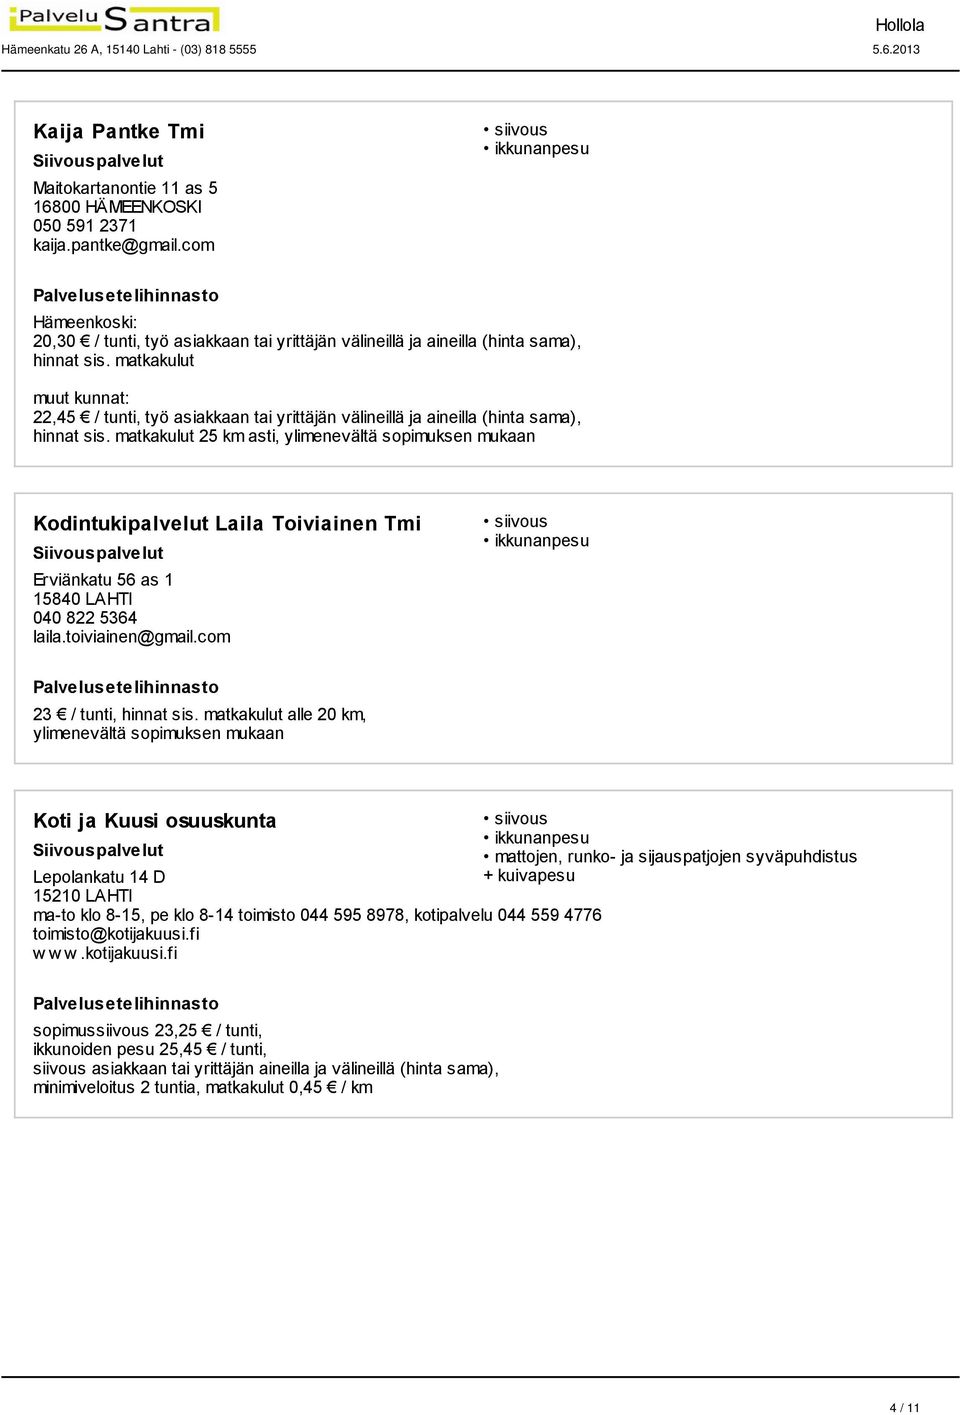 matkakulut 25 km asti, ylimenevältä sopimuksen mukaan Kodintukipalvelut Laila Toiviainen Tmi Erviänkatu 56 as 1 15840 LAHTI 040 822 5364 laila.toiviainen@gmail.com 23 / tunti, hinnat sis.